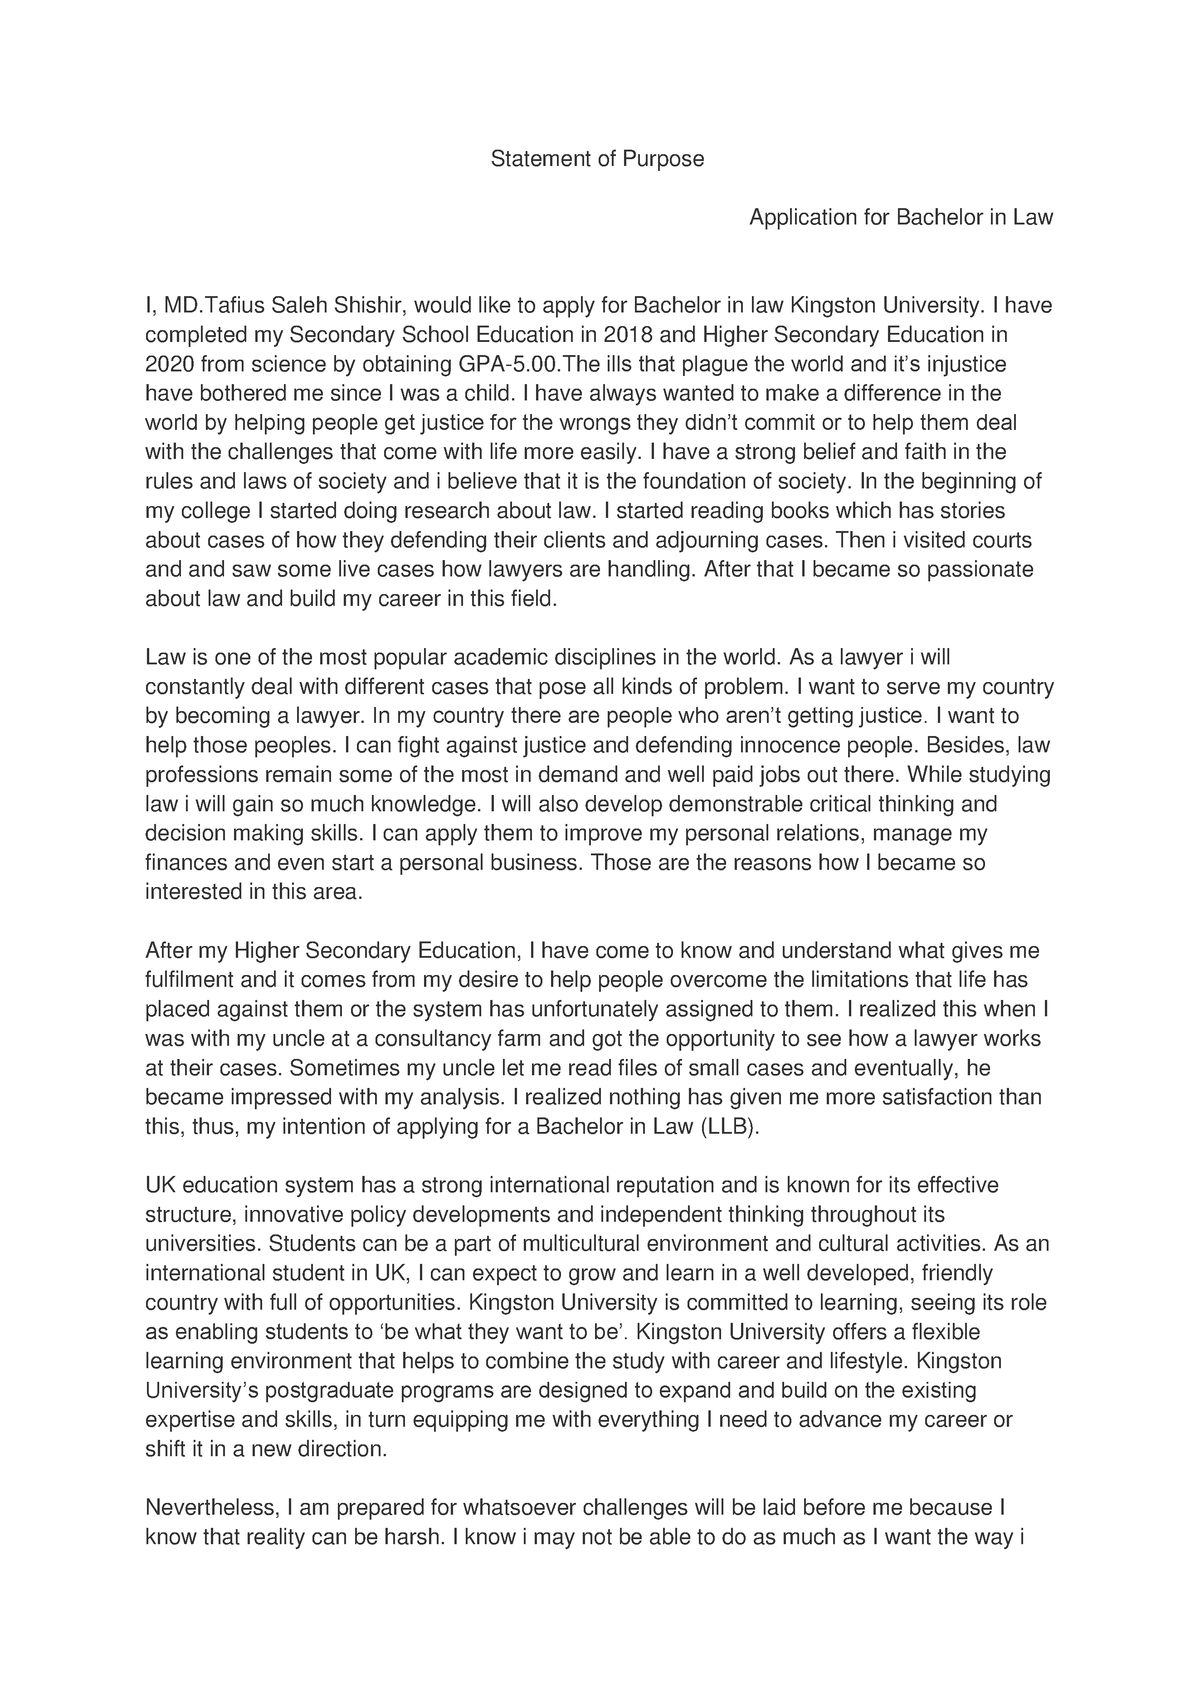 kingston university personal statement